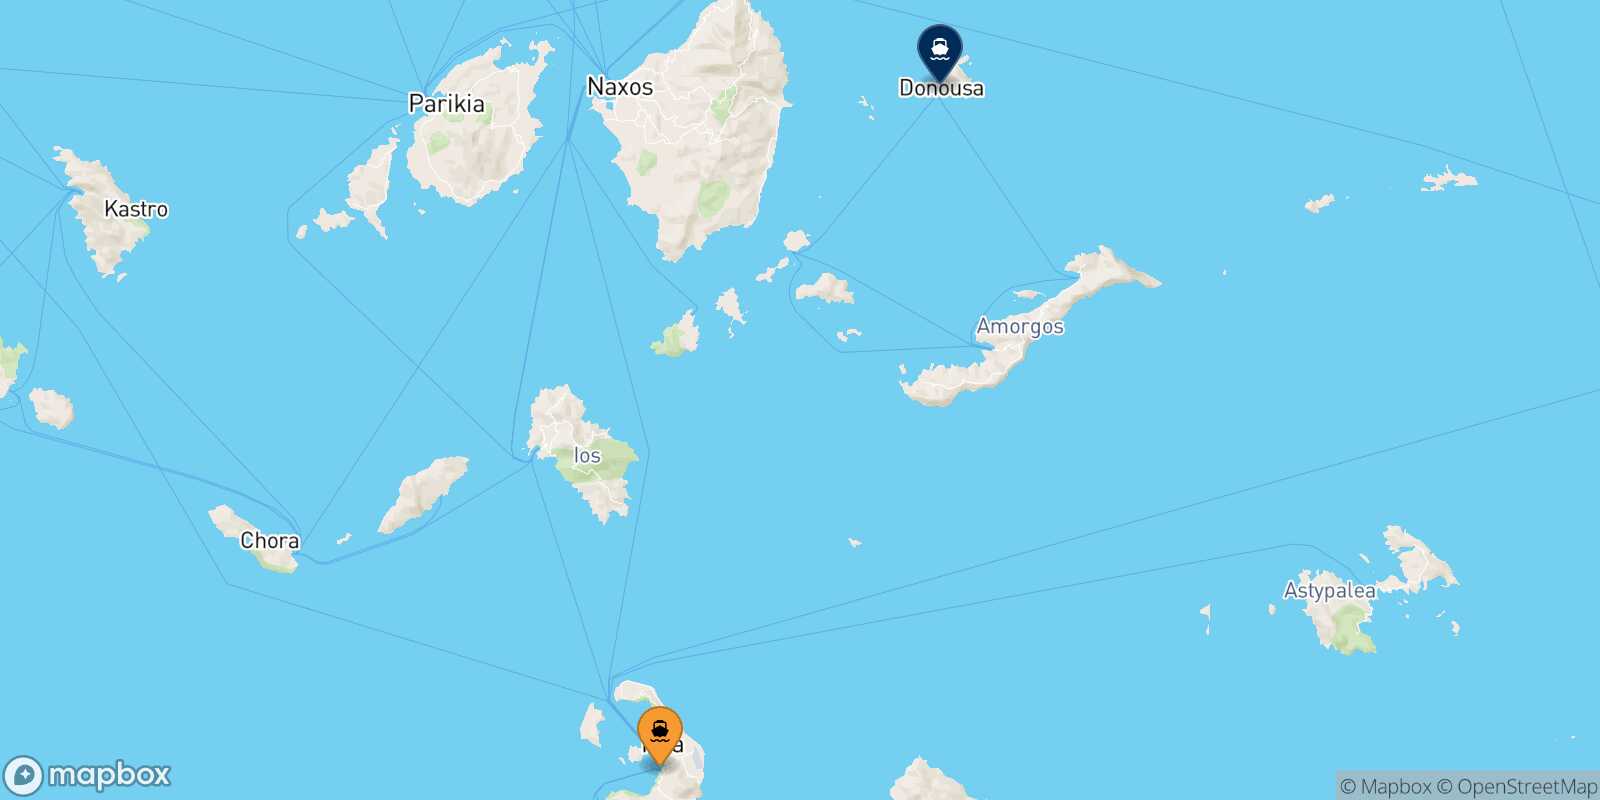 Thira (Santorini) Donoussa route map